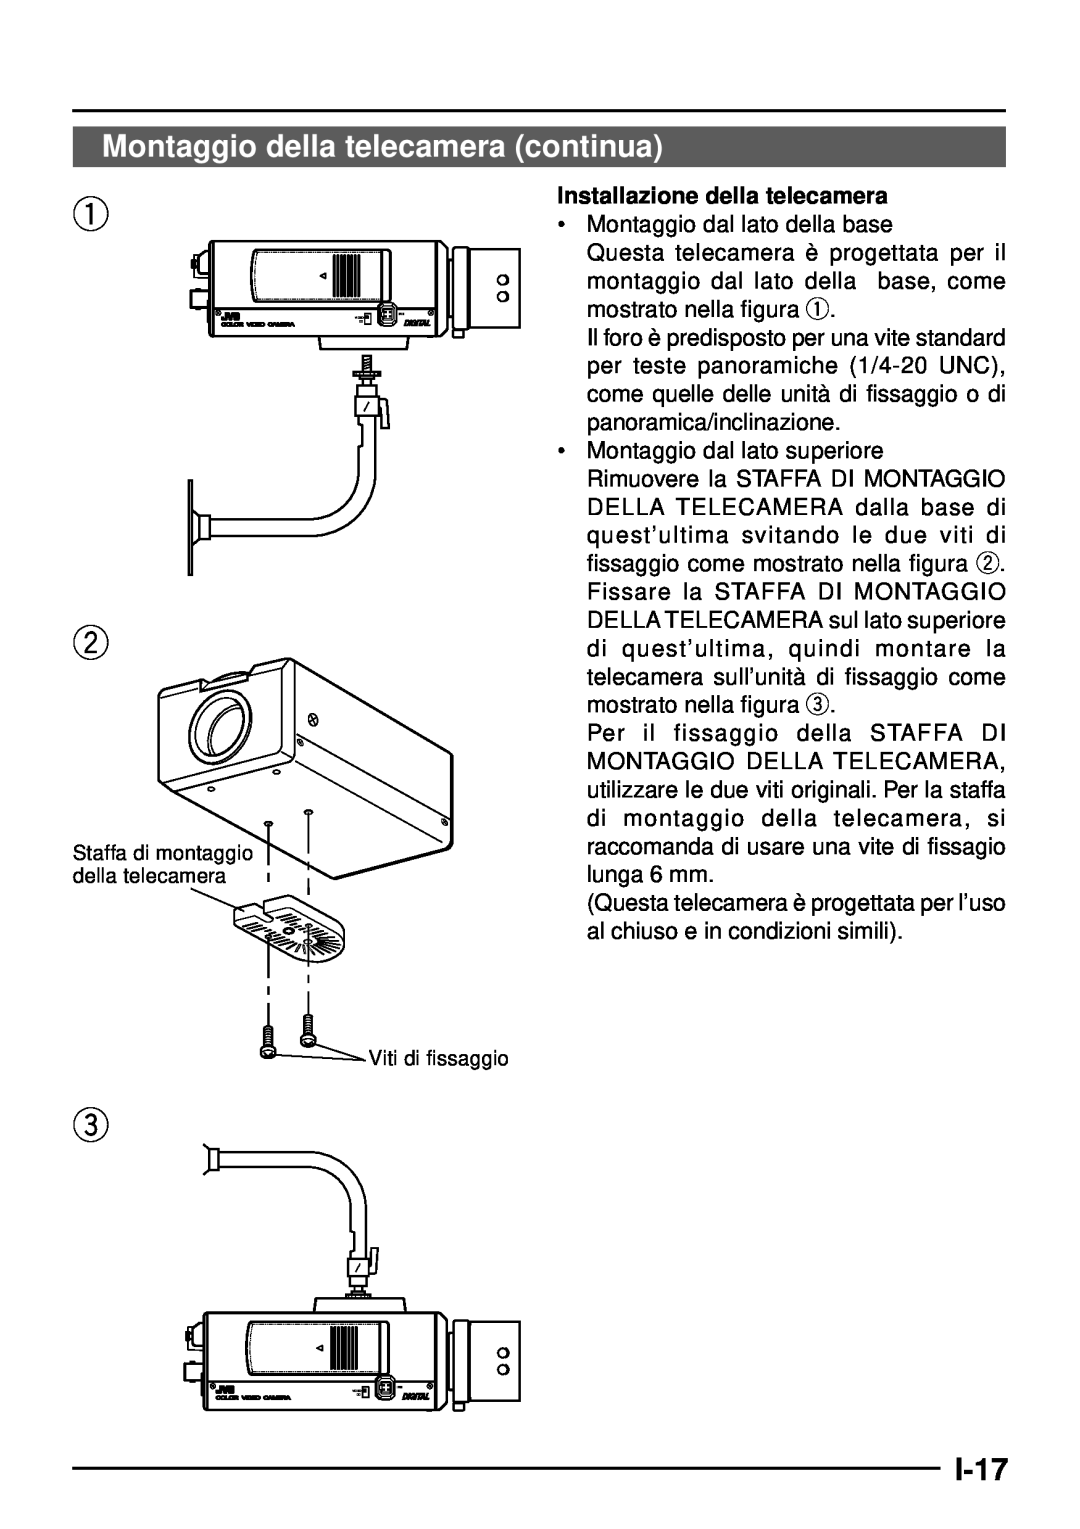 JVC TK-C1460 manual Montaggio della telecamera continua, I-17, Installazione della telecamera 